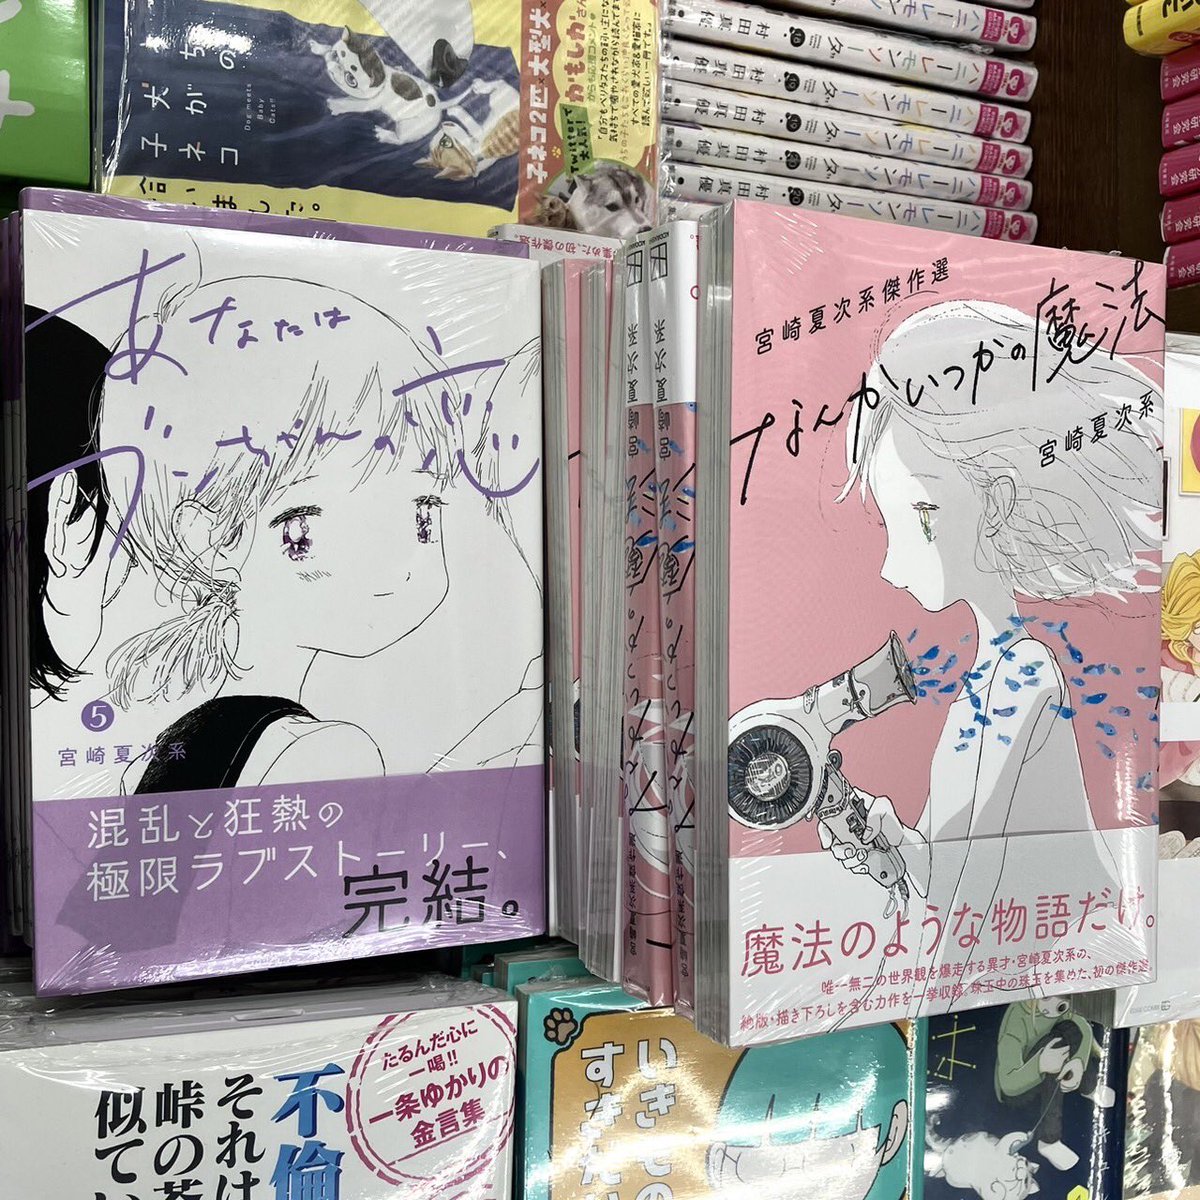 東京・阿佐ヶ谷駅すぐそばの名物書店「書楽」さん新刊漫画コーナーにて、宮崎夏次系最新刊『あなたはブンちゃんの恋』5巻&『なんかいつかの魔法』をご展開いただいております。

ブンちゃんは、1〜5巻全巻揃って置いていただいていて感激です!! 